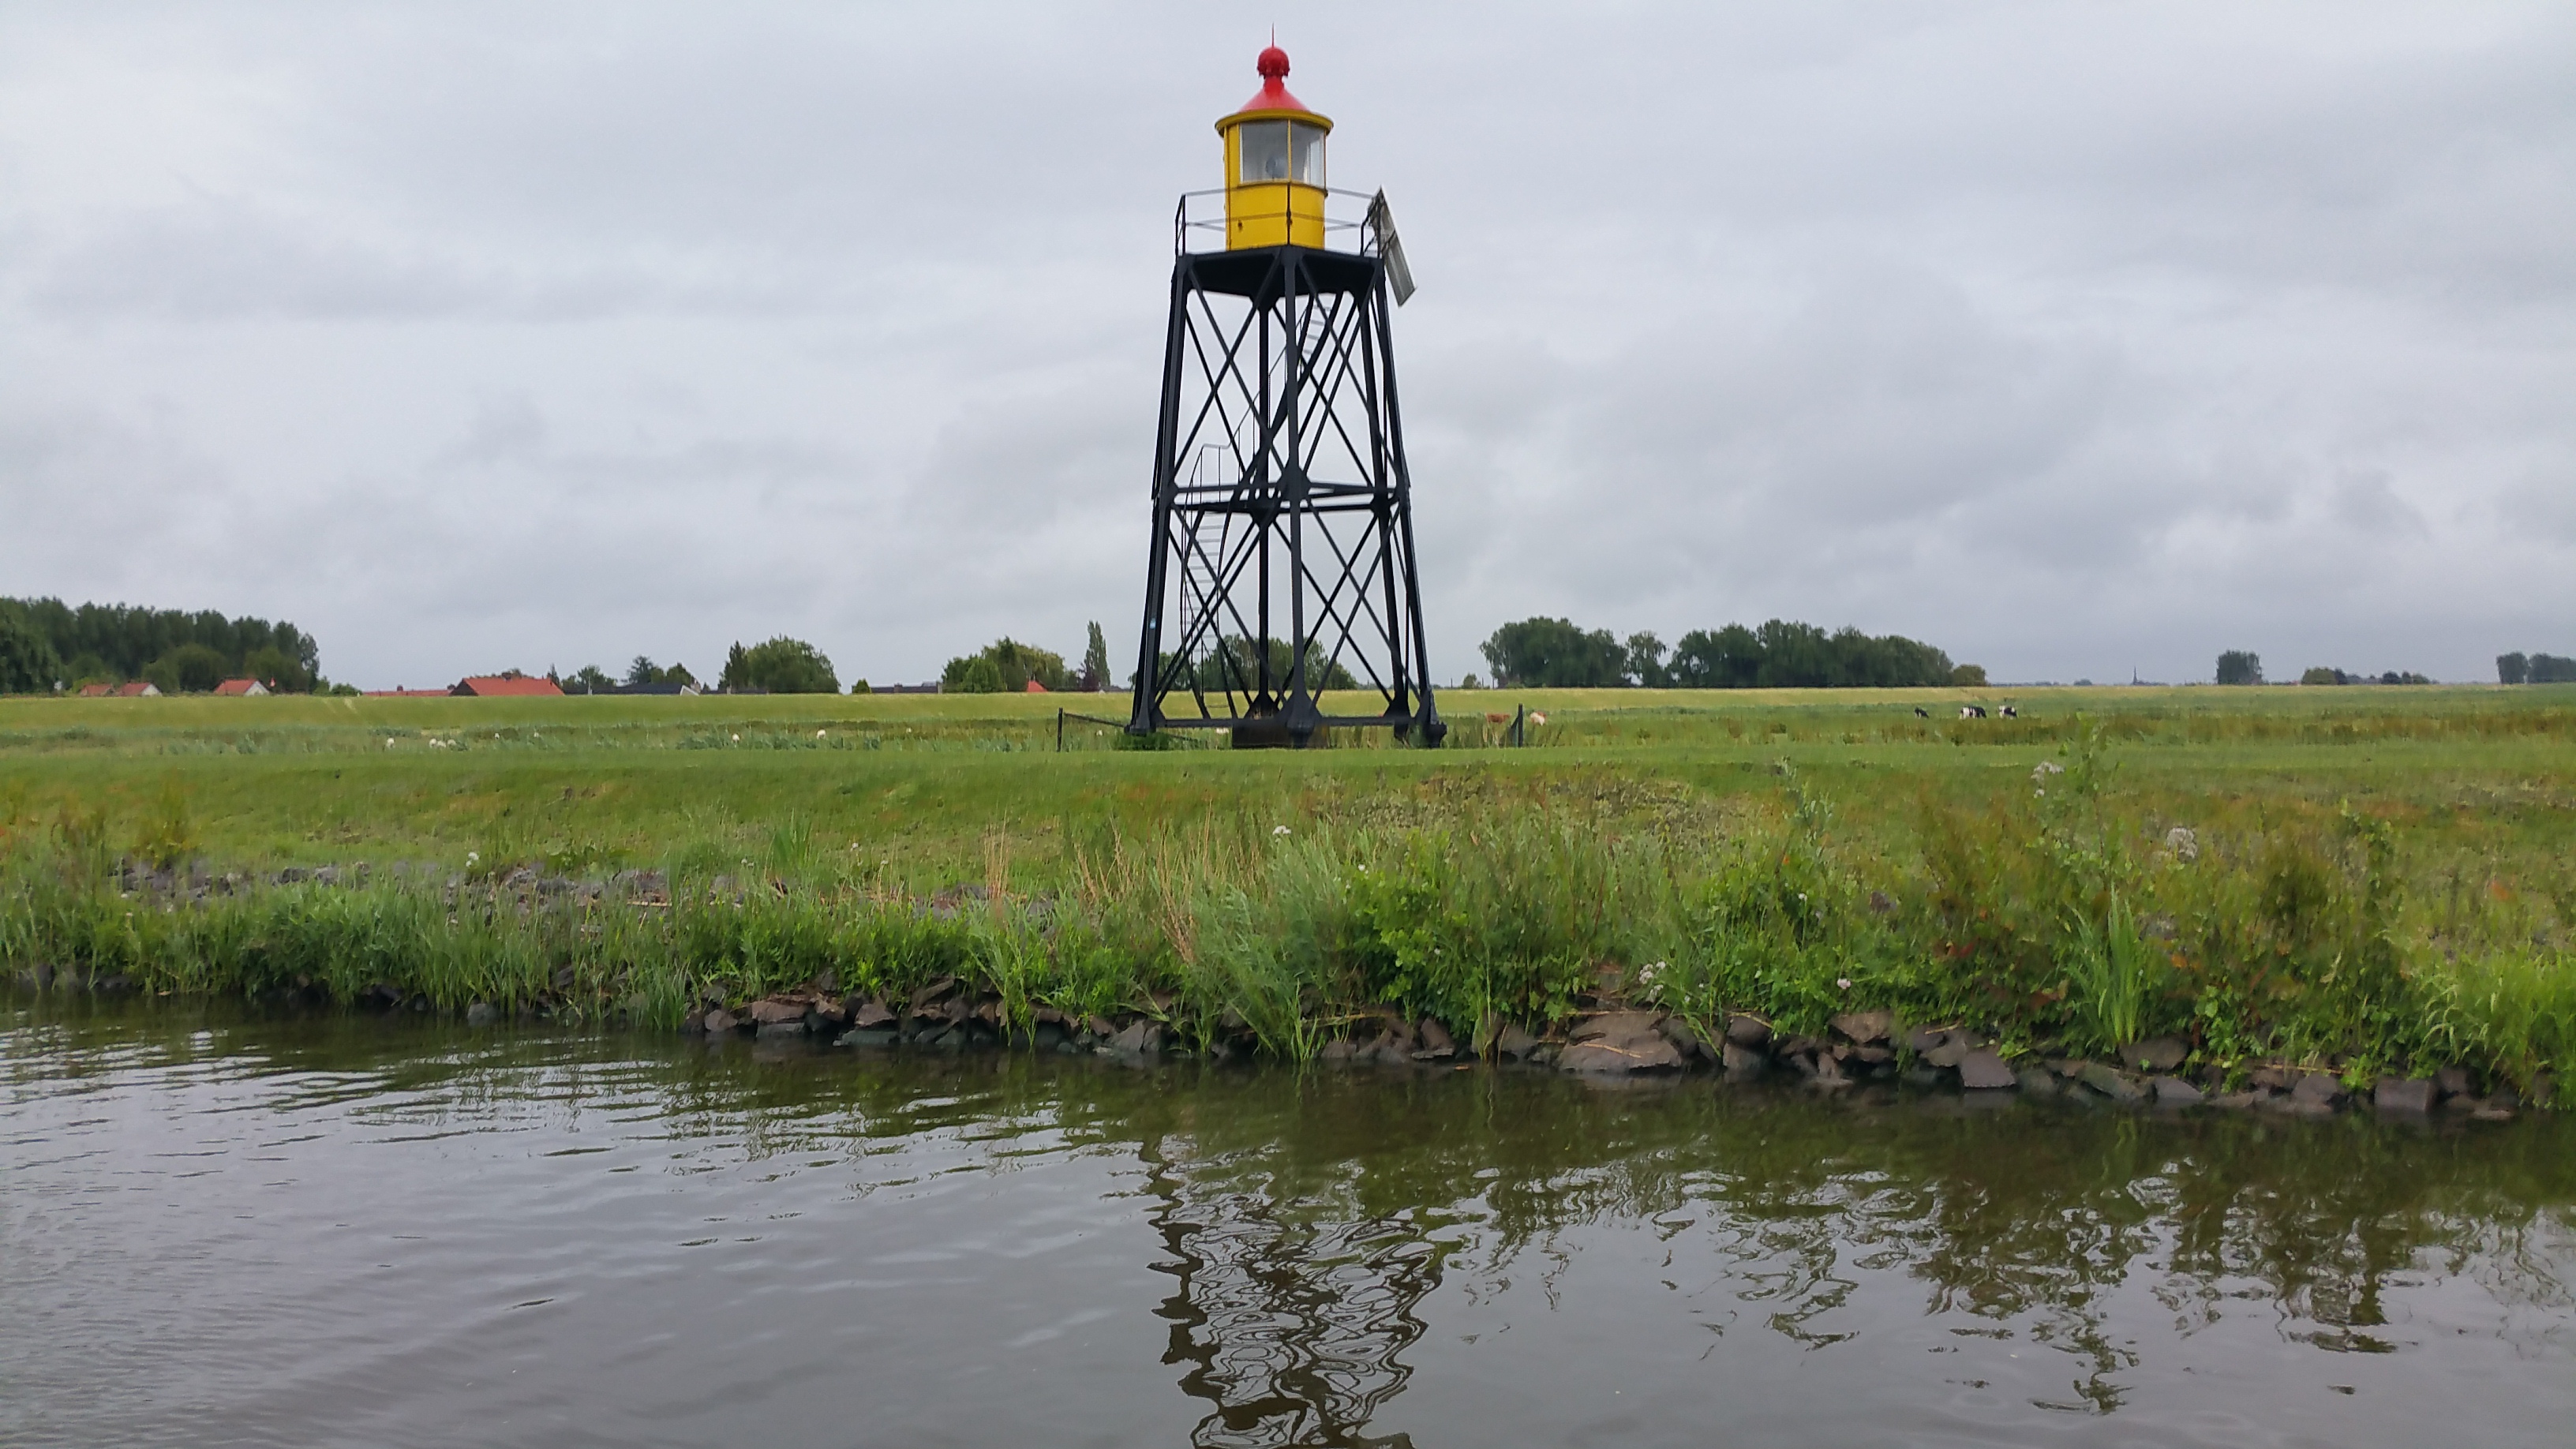 Lichttoren Nieuwendijk tijdens wandeling op eiland Tiengemeten